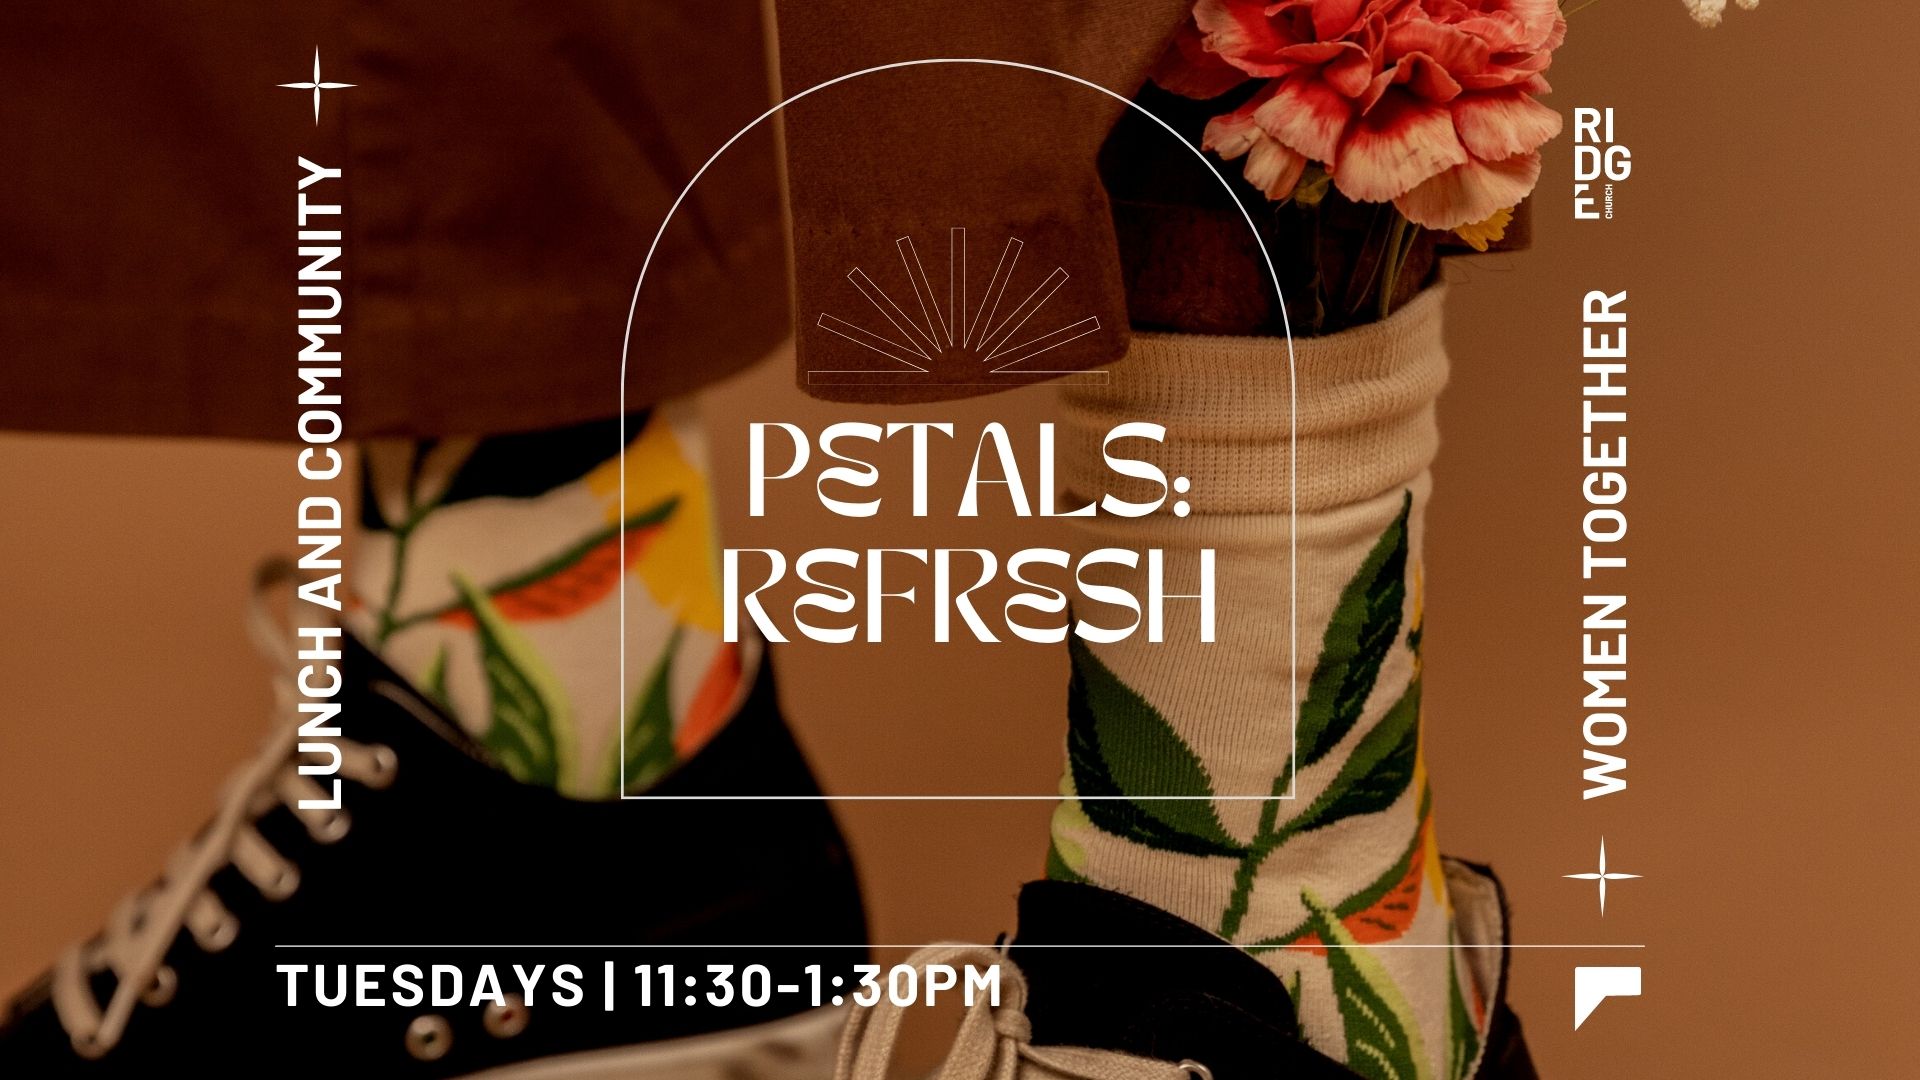 Petals: Refresh